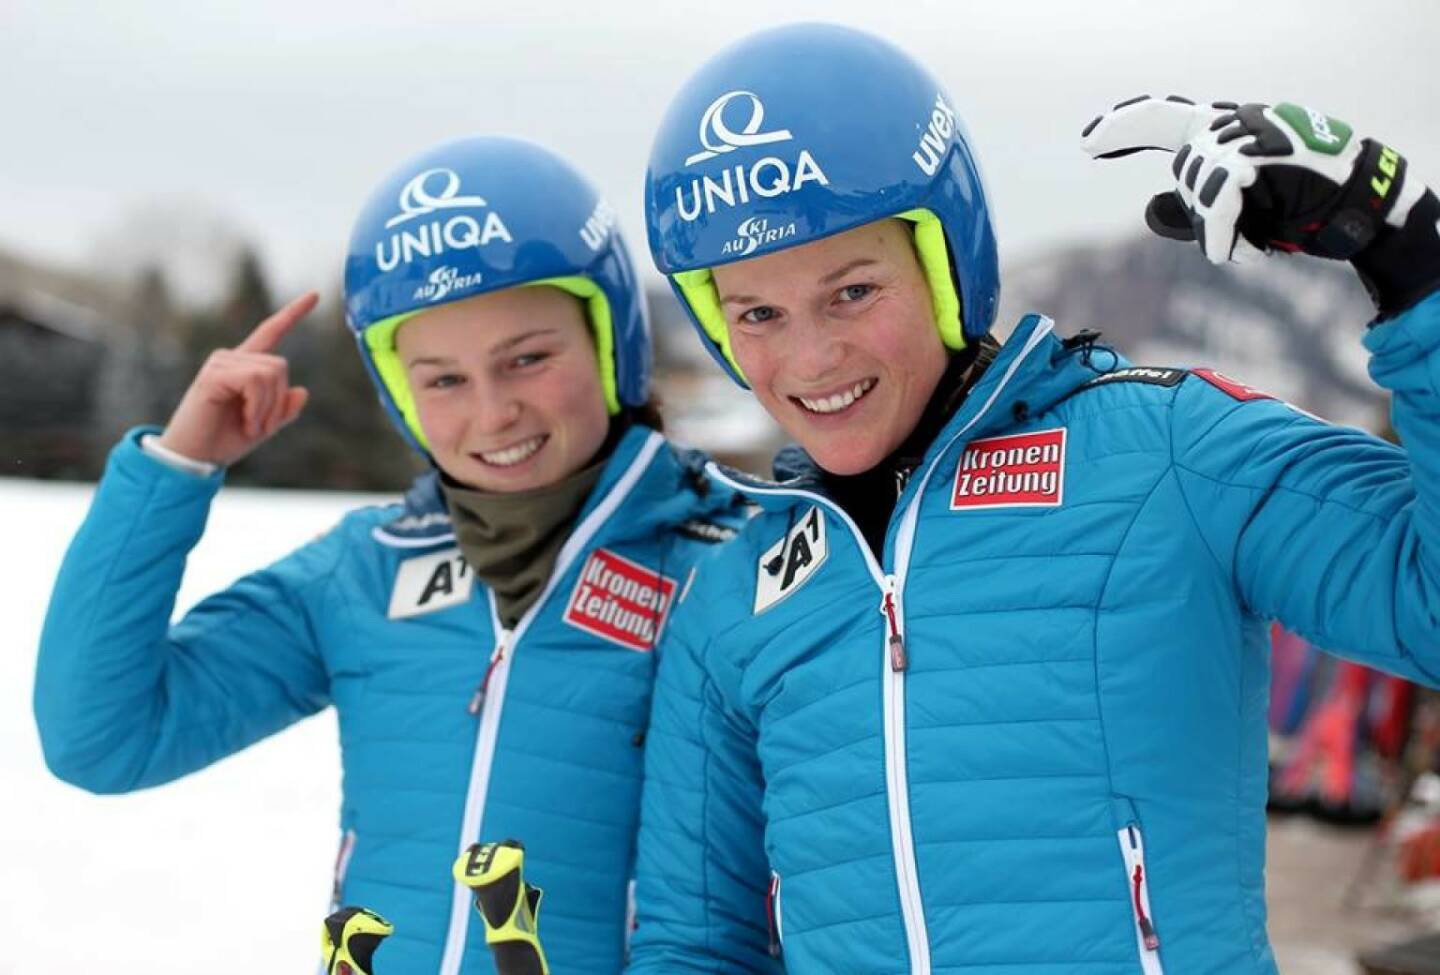 Bernadette Schild, Marlies Schild. Viel Glück und eine gute Fahrt beim Slalom in Bormio wünscht Uniqa